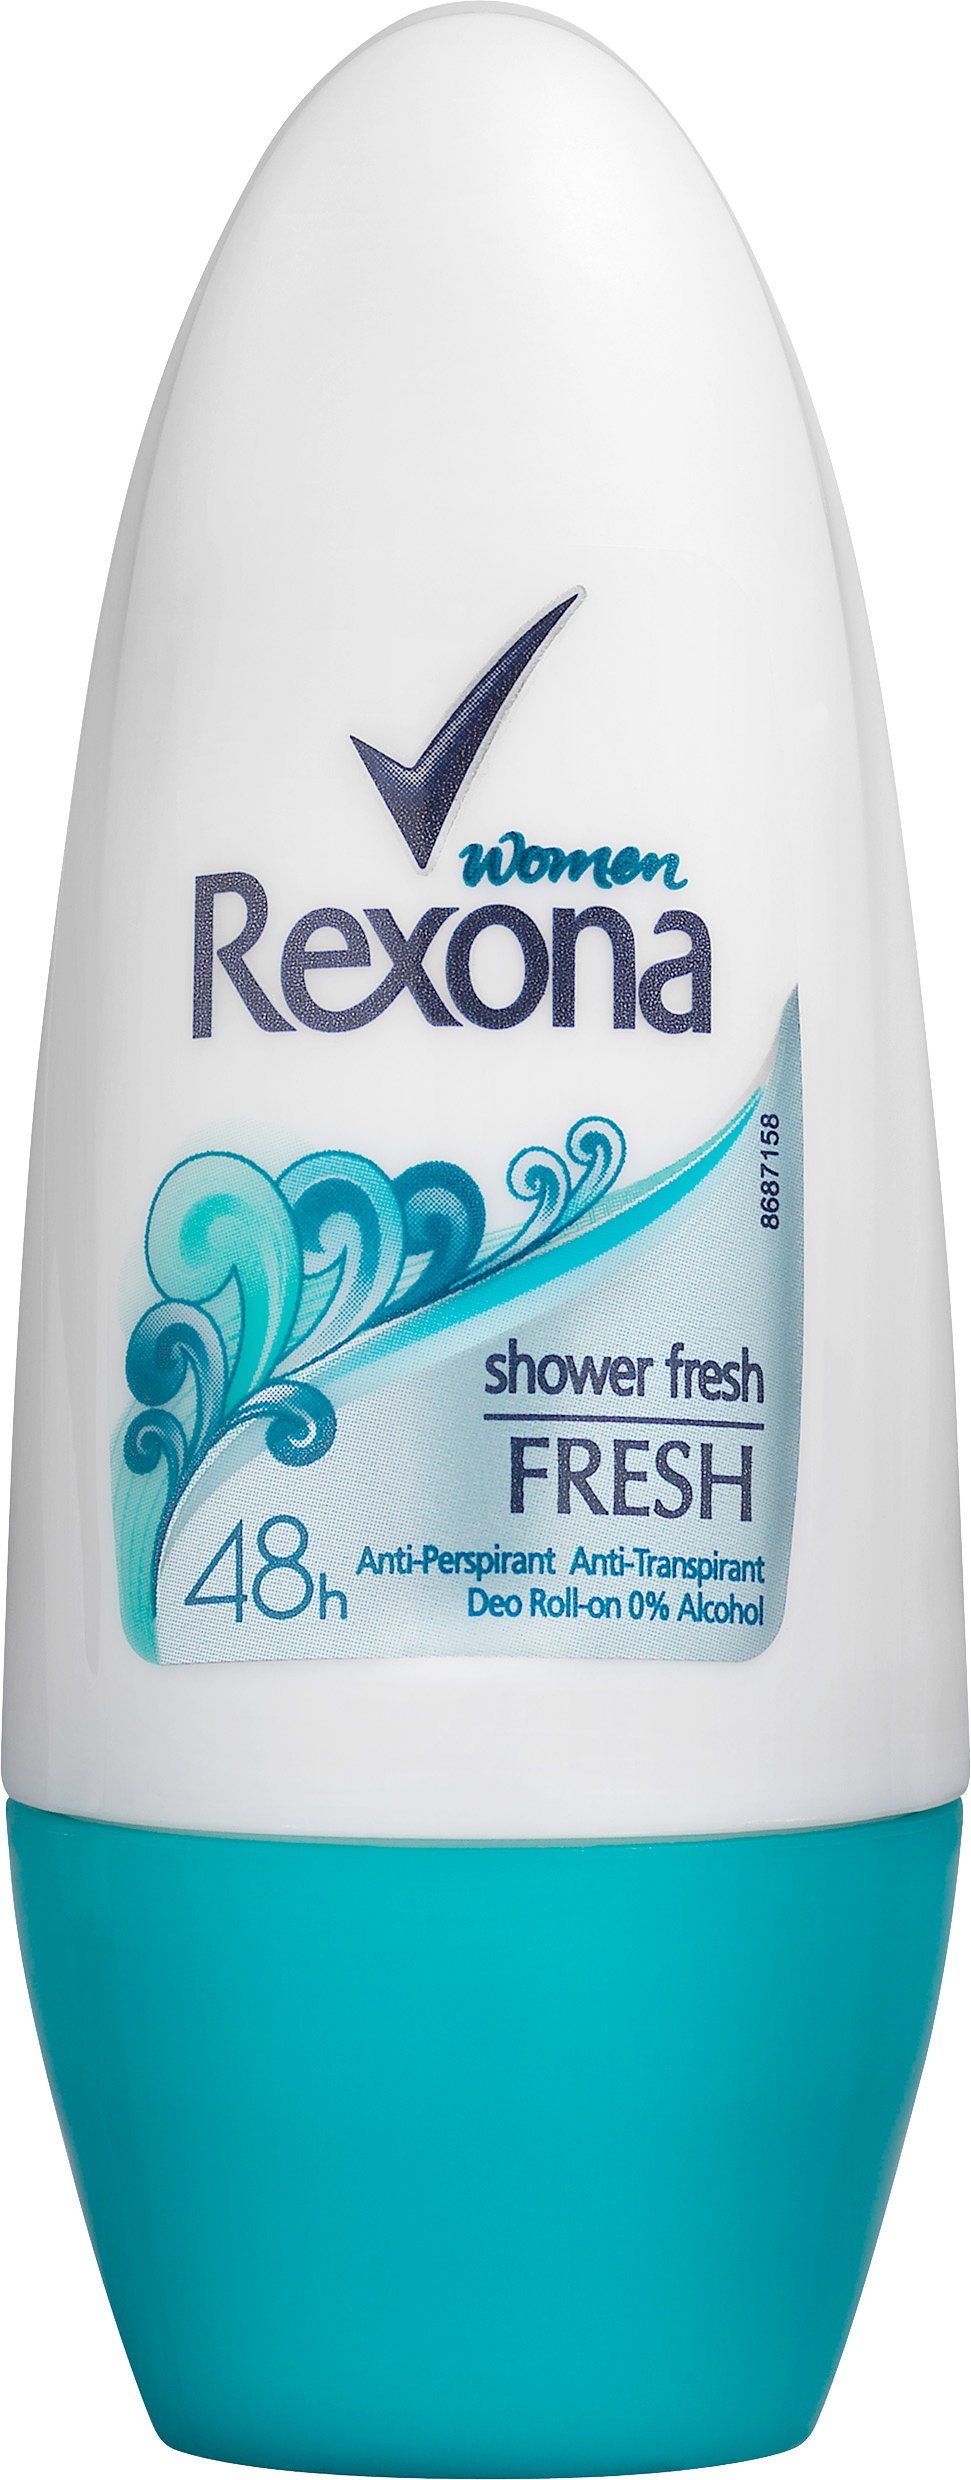 Rexona Shower Fresh Roll-on 50 ml